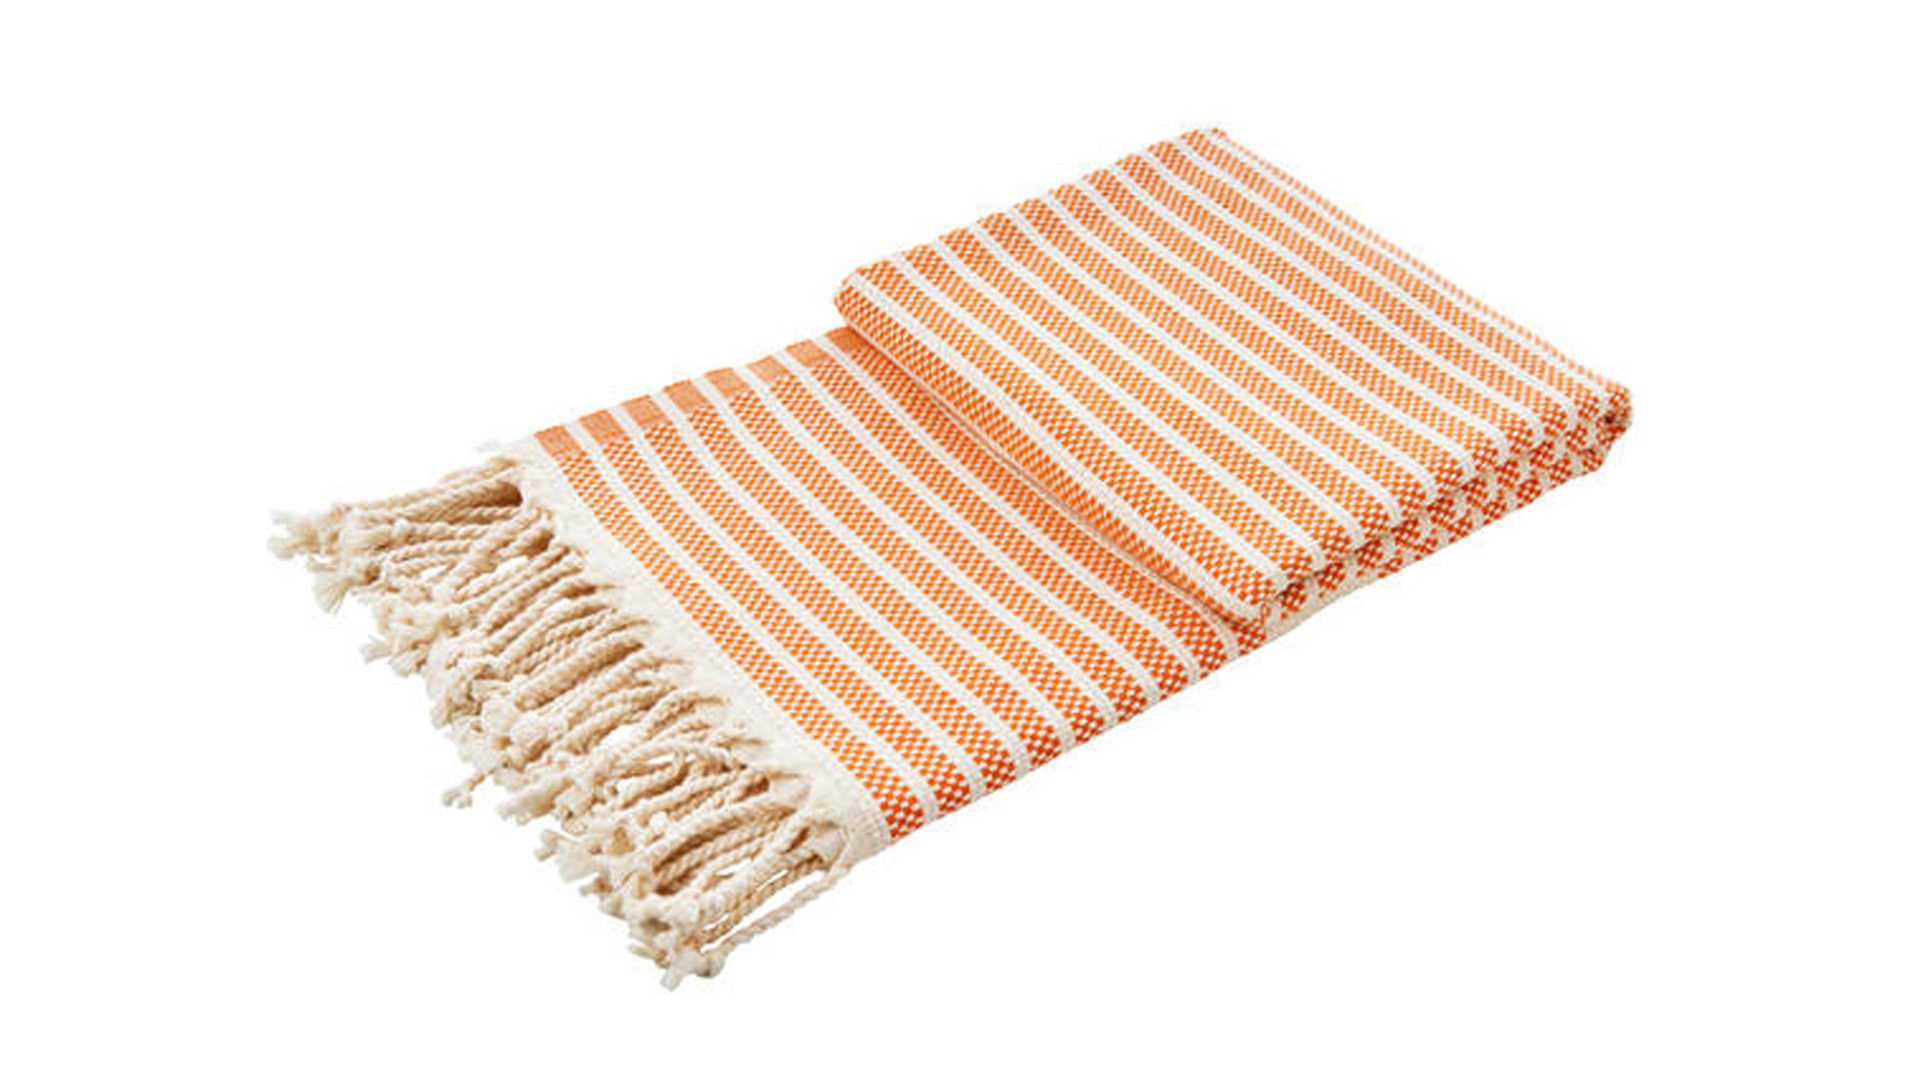 Wohndecke Done.® aus Naturfaser in Orange done.® Wohndecke Lounge Stripes Plus Orange & Weiß – ca. 100 x 180 cm